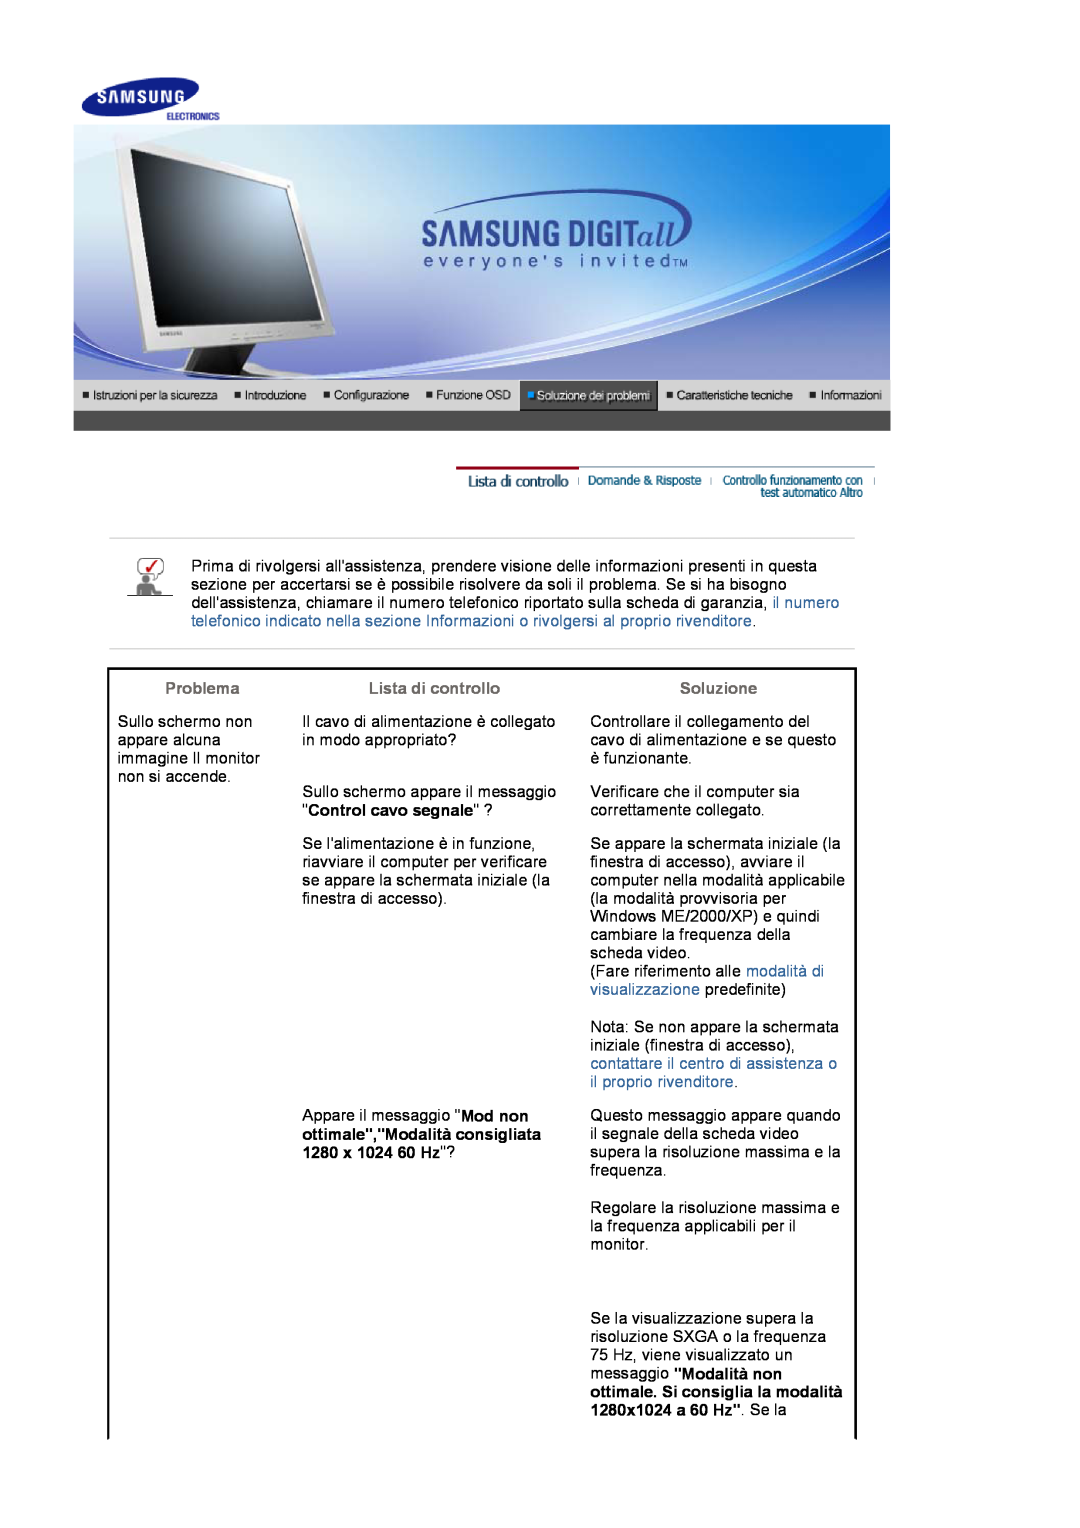 Samsung LS17MJVKS/EDC manual Control cavo segnale ?, Problema, Lista di controllo, Soluzione 